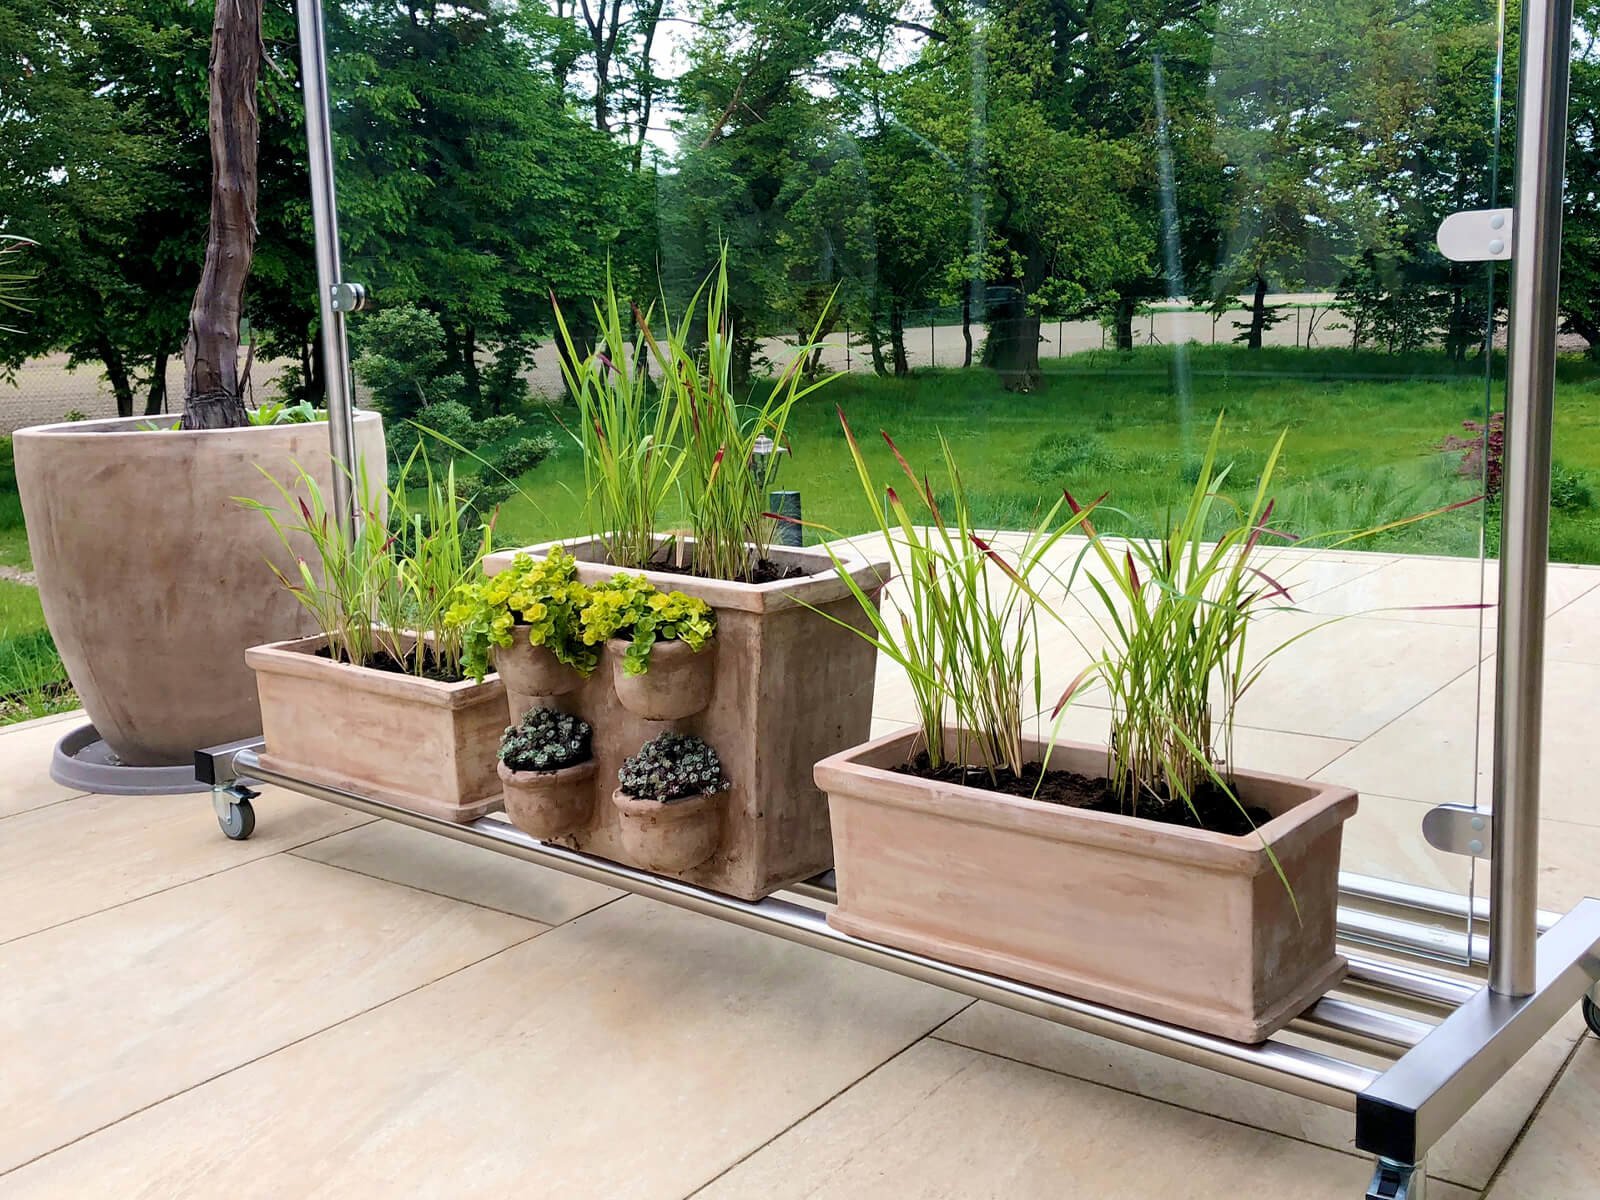 Mobiler Wind- und Sichtschutz auf Rollen mit Ablagefläche für Blumen und Pflanzen Eyecatcher in jedem Garten